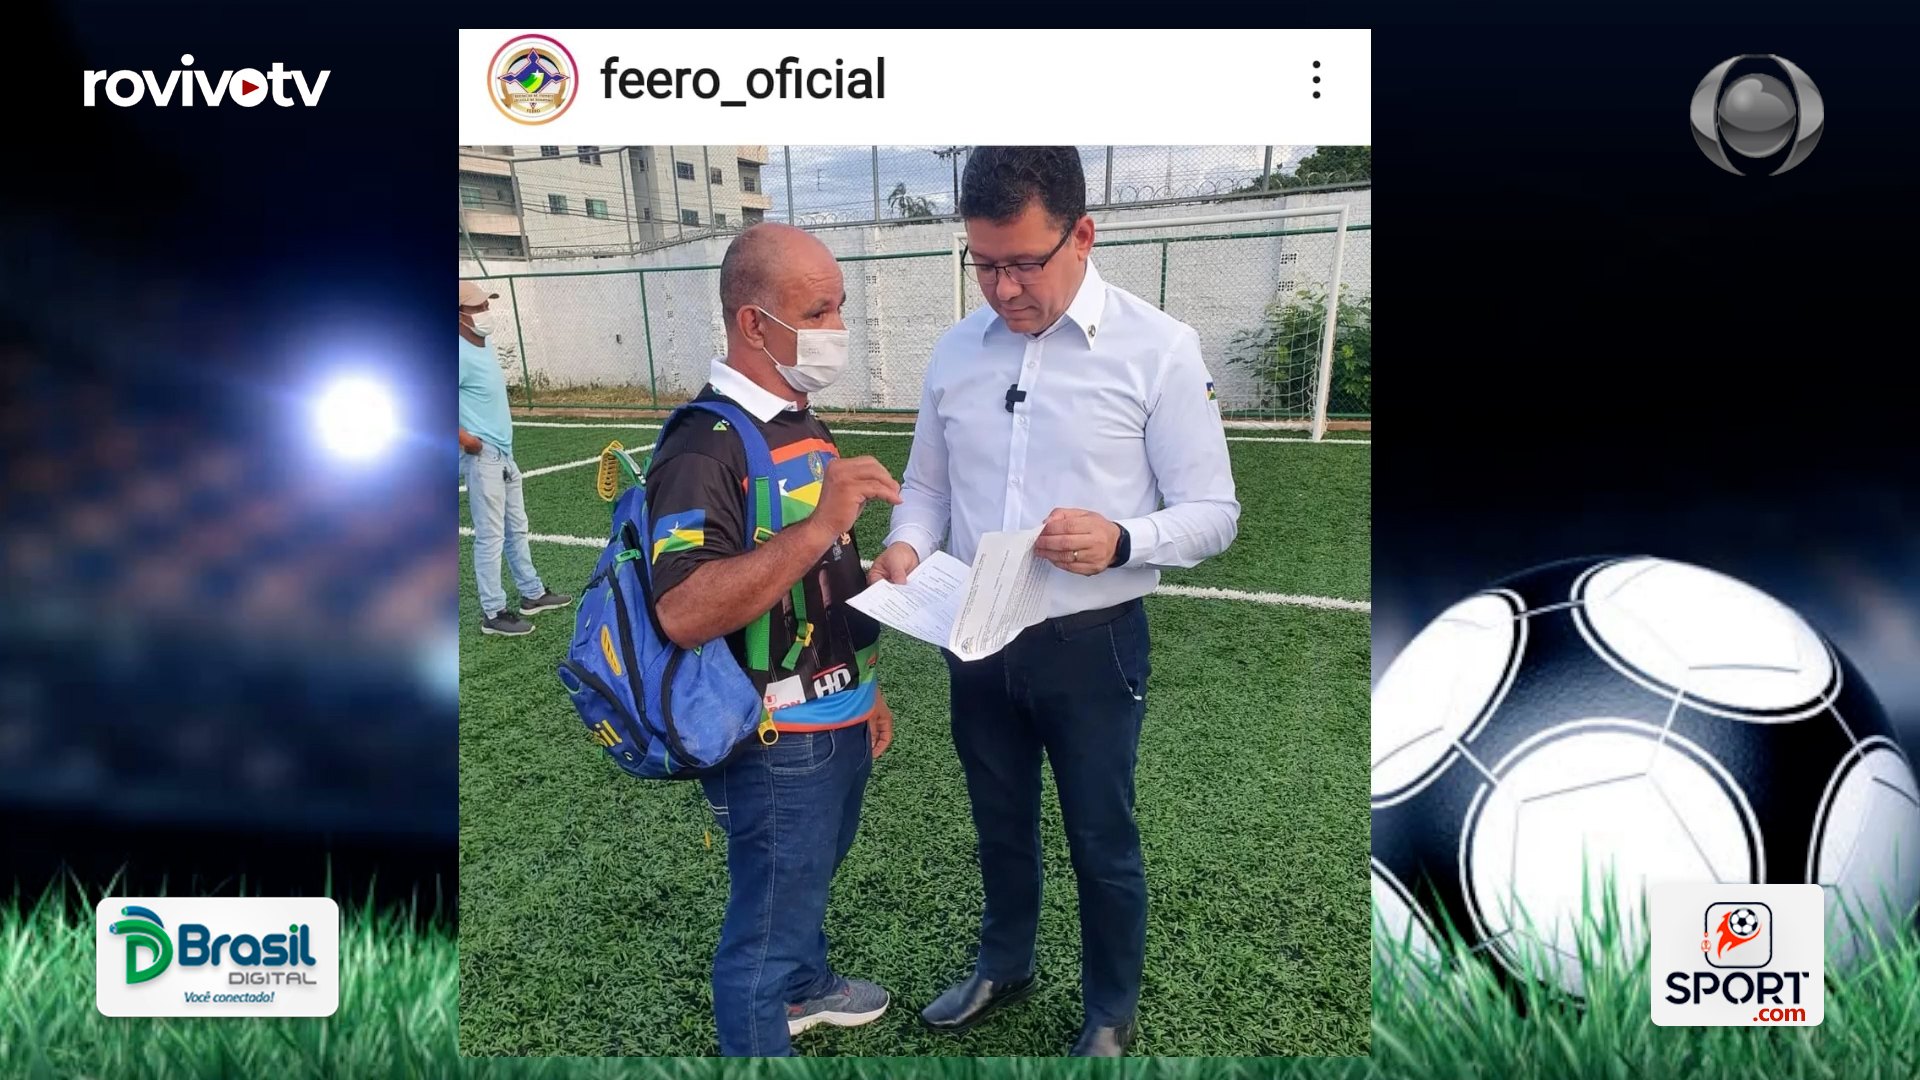 Governador Marcos Rocha recebe da FEERO relação de atletas escolares para o Gymnasiade